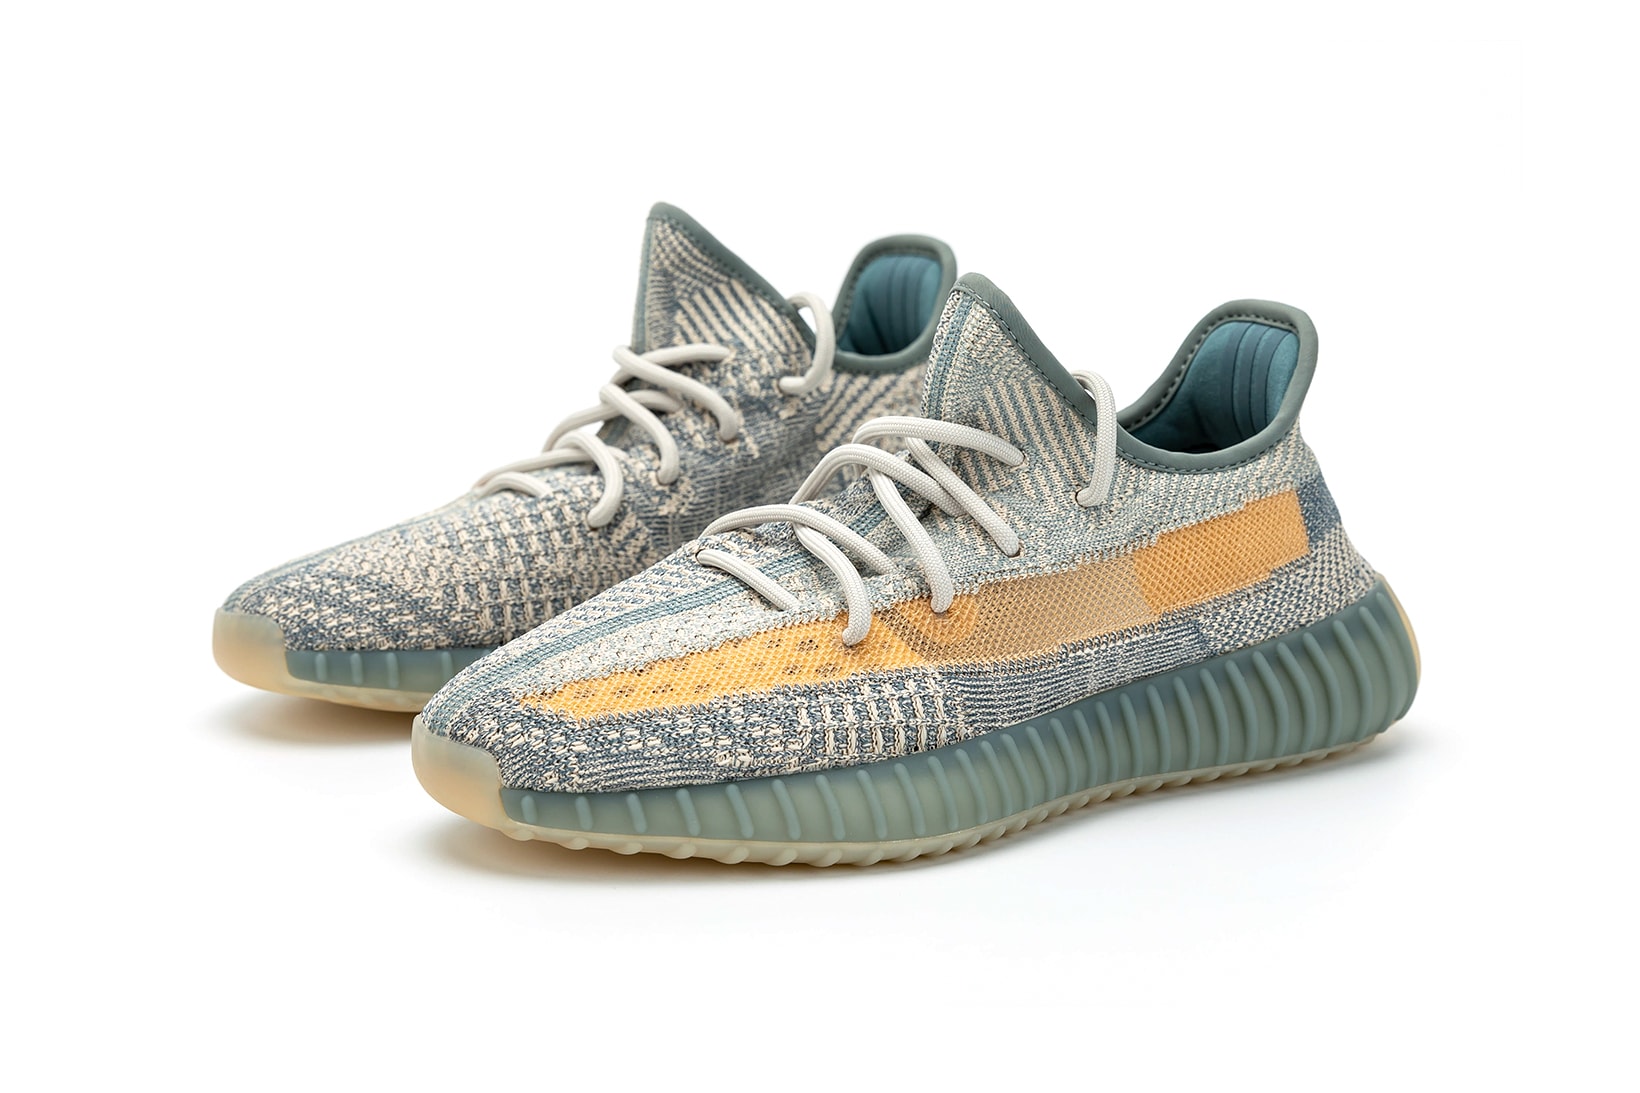 adidas kanye west yeezy boost 350 v2 israfil sneakers blue green gray orange colorway shoes sneakerhead footwear